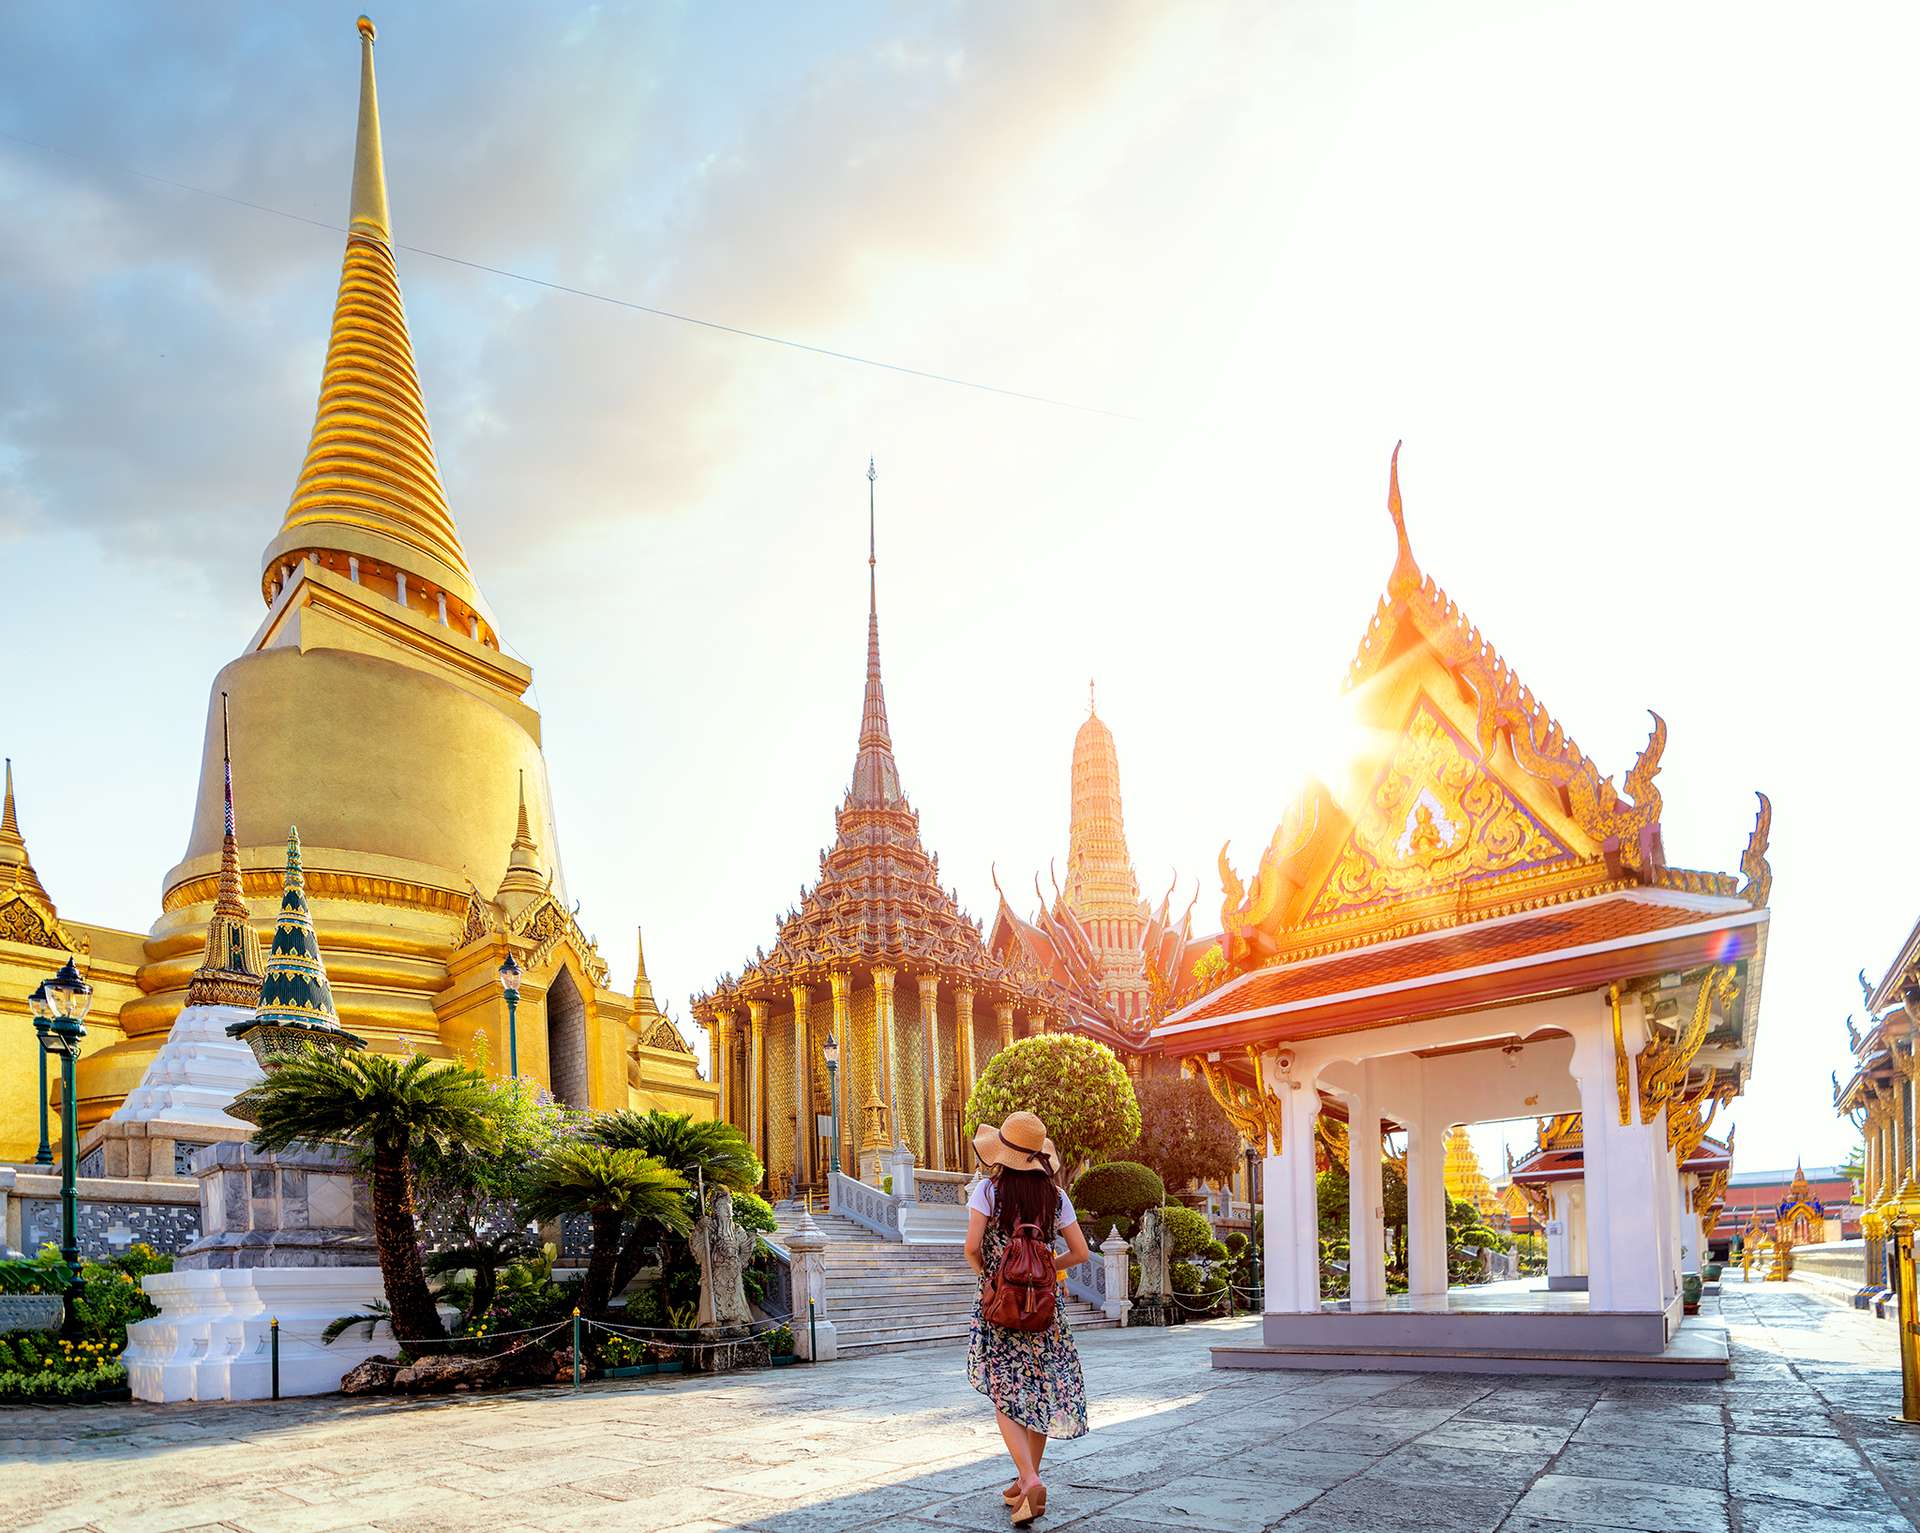 Trong ảnh đầy màu sắc này, bạn sẽ được thưởng thức vẻ đẹp kiến trúc của Chùa Phật Ngọc Thái Lan. Nơi đây được xây dựng vơí những chi tiết tỉ mỉ, mang đậm nét văn hóa và tôn giáo của người Thái. Hãy cùng khám phá cảm giác yên bình và tâm linh khi đặt chân tới đây.